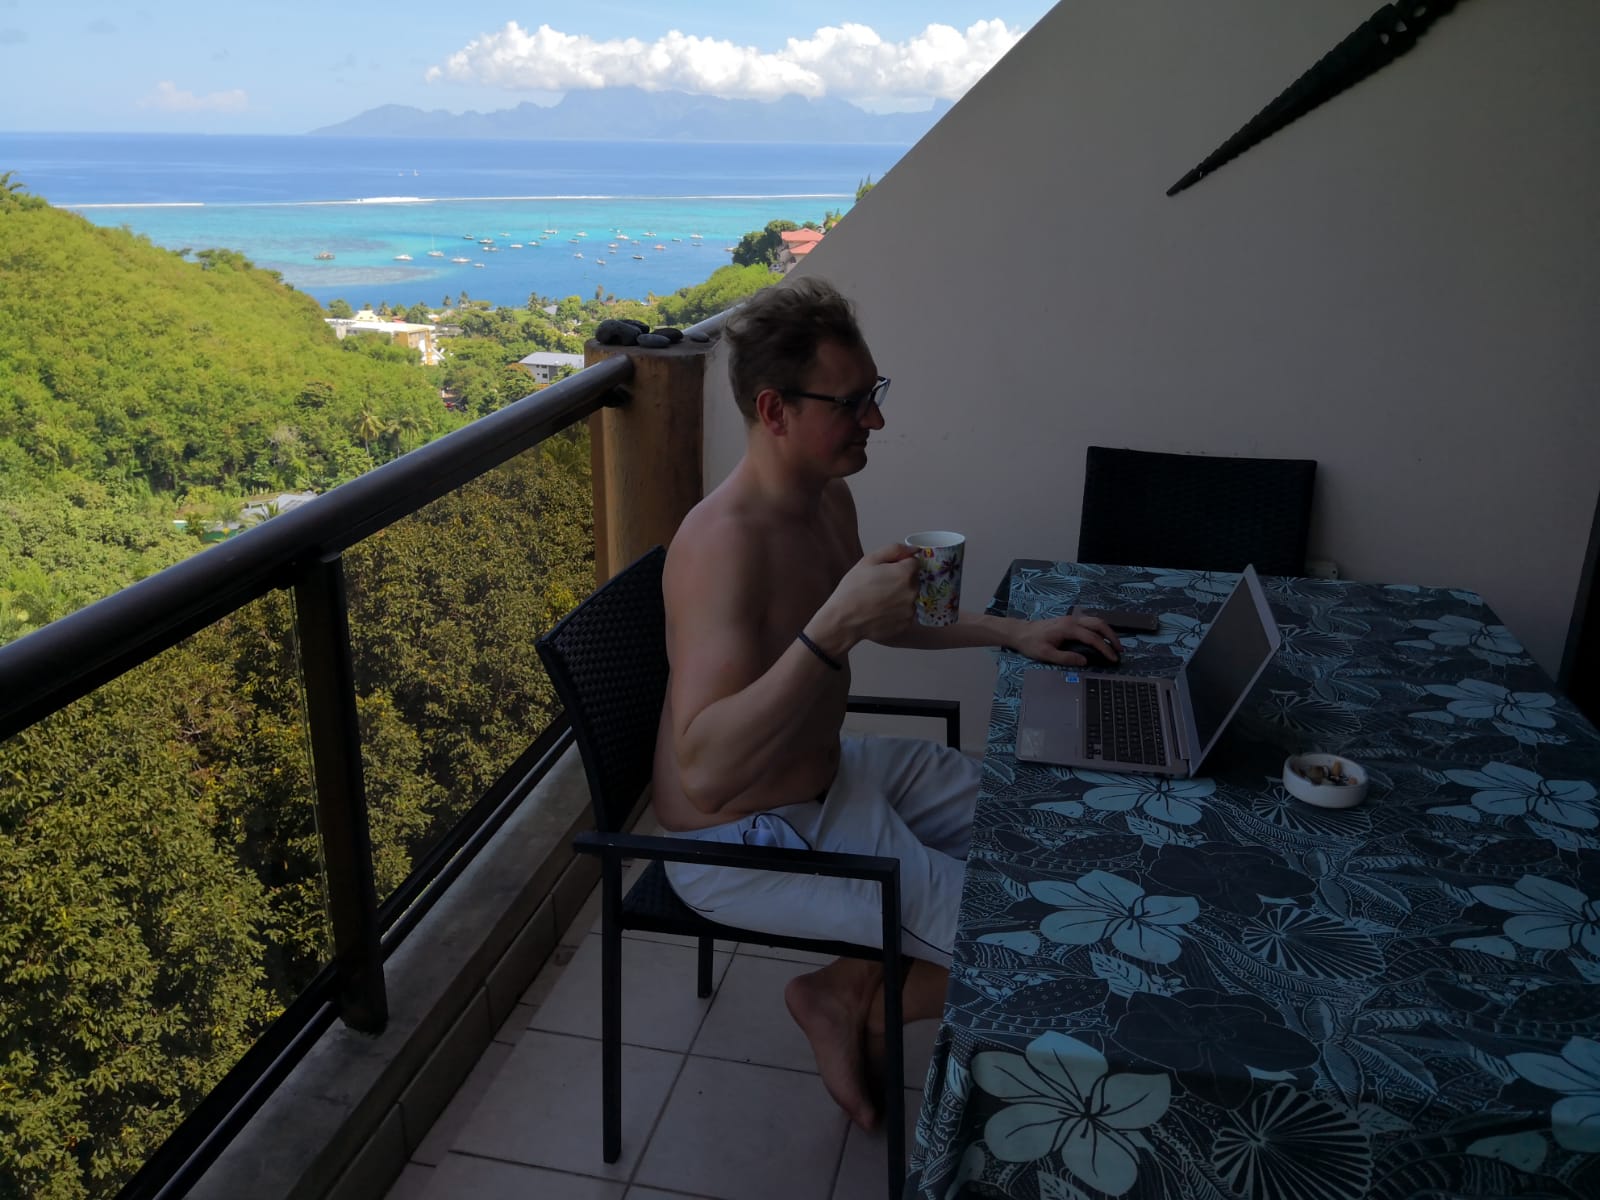 Swim and Beach Breaks: il posto migliore da cui ho lavorato come nomade digitale è ... Tahiti! : Swim and Beach Breaks: il posto migliore da cui ho lavorato come nomade digitale è ... Tahiti!